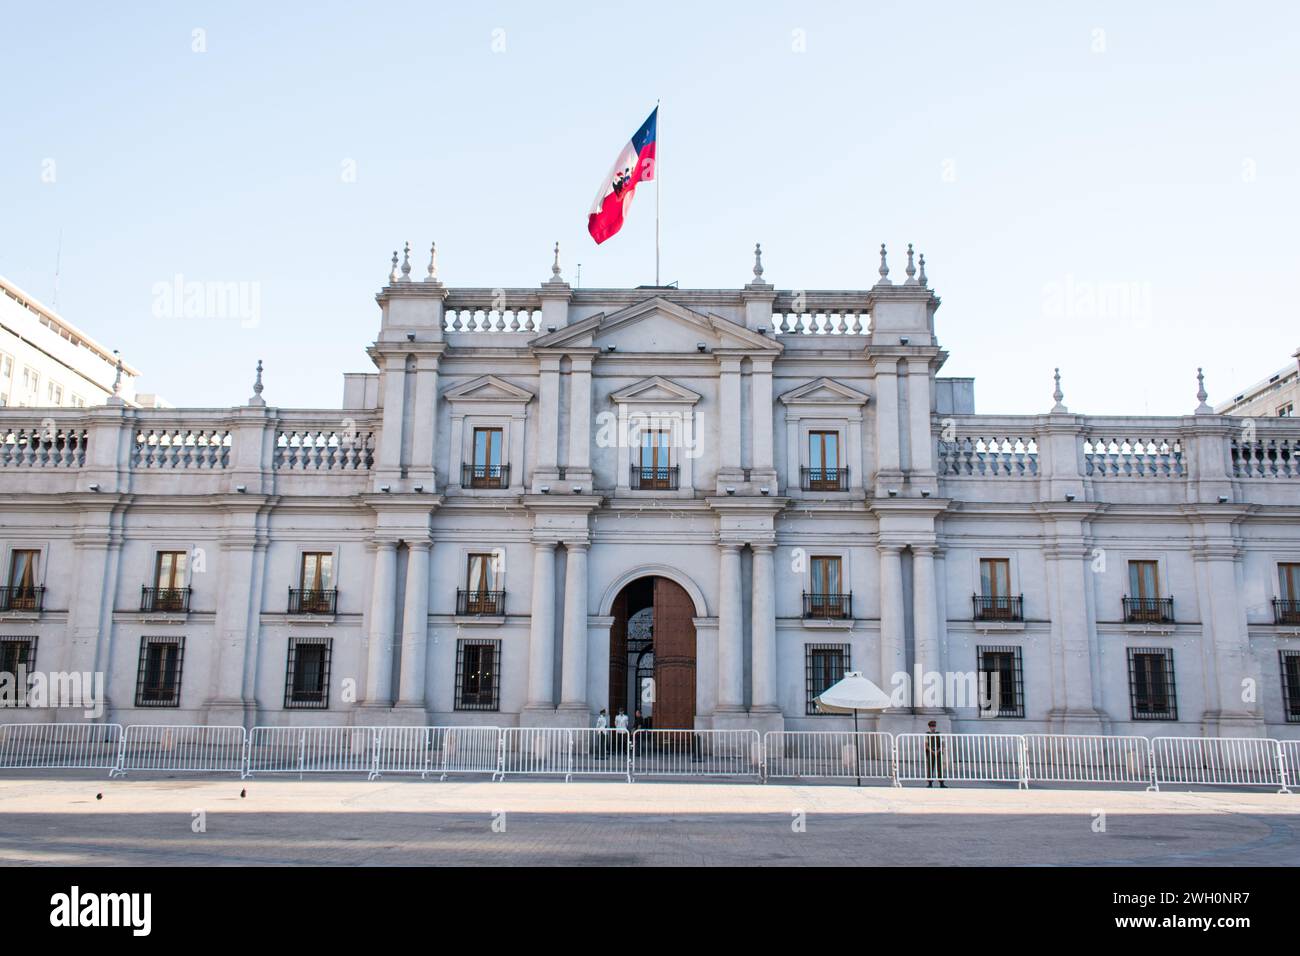 Facciata del Palacio de la Moneda o la Moneda, il palazzo presidenziale situato nel centro di Santiago. Foto Stock